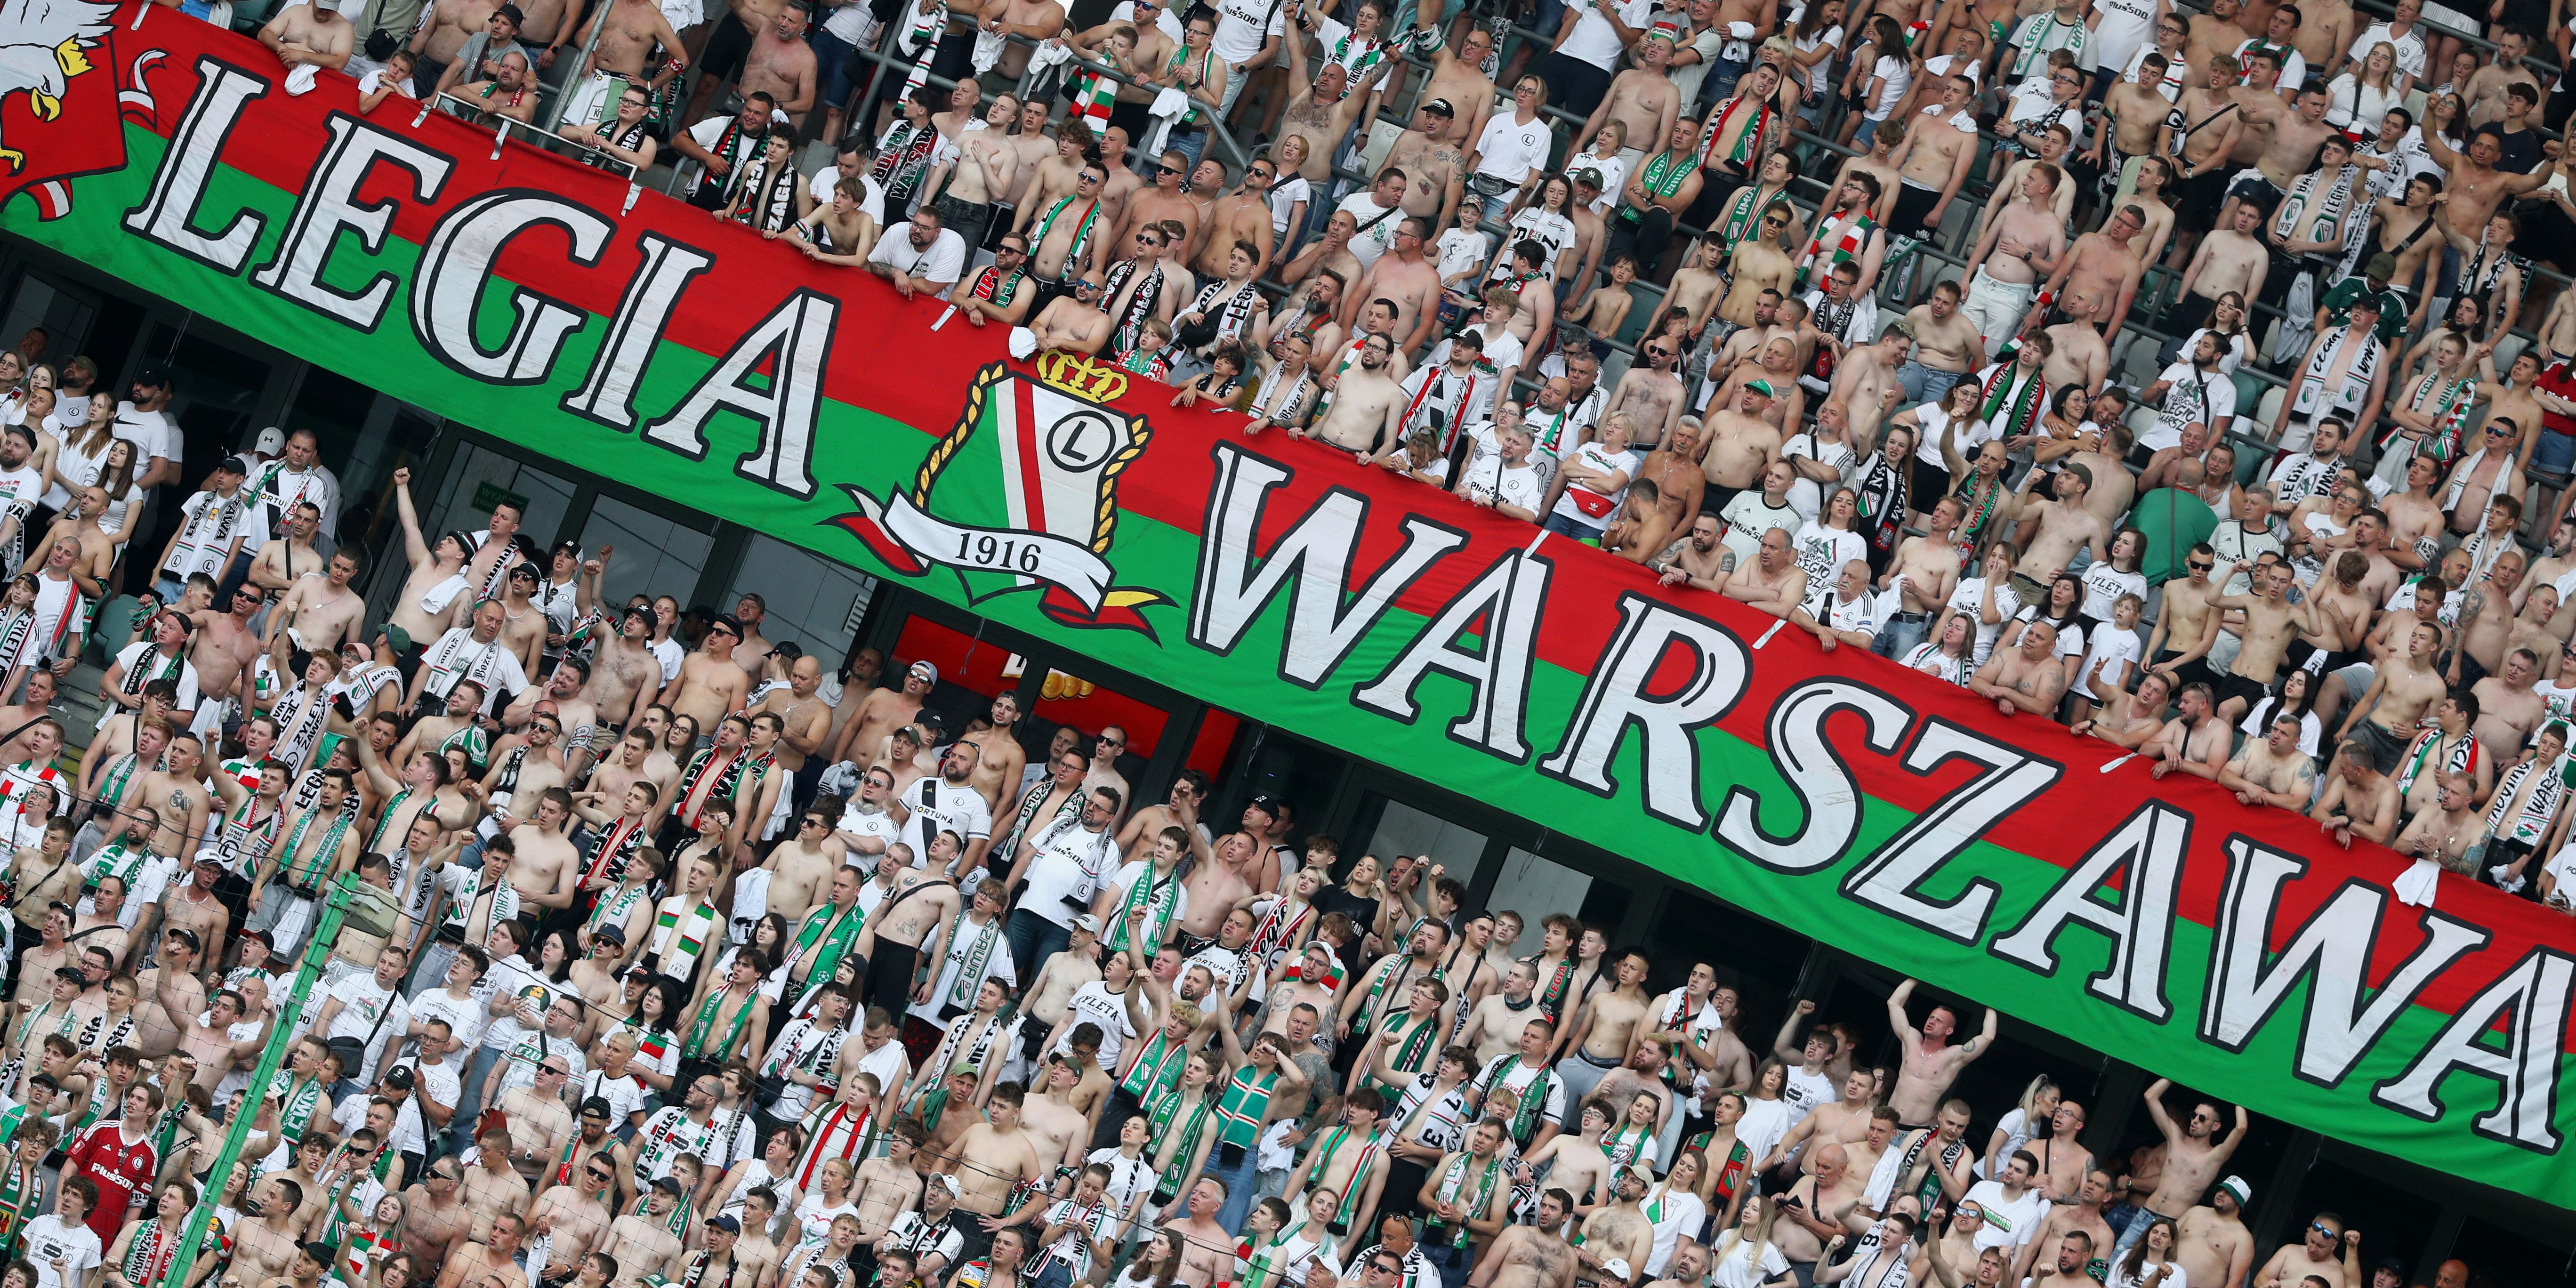 IDZIEMY ZA CIOSEM! Sprzedaż biletów na mecz Legia Warszawa - Piast Gliwice. #ChodźNaLegię!